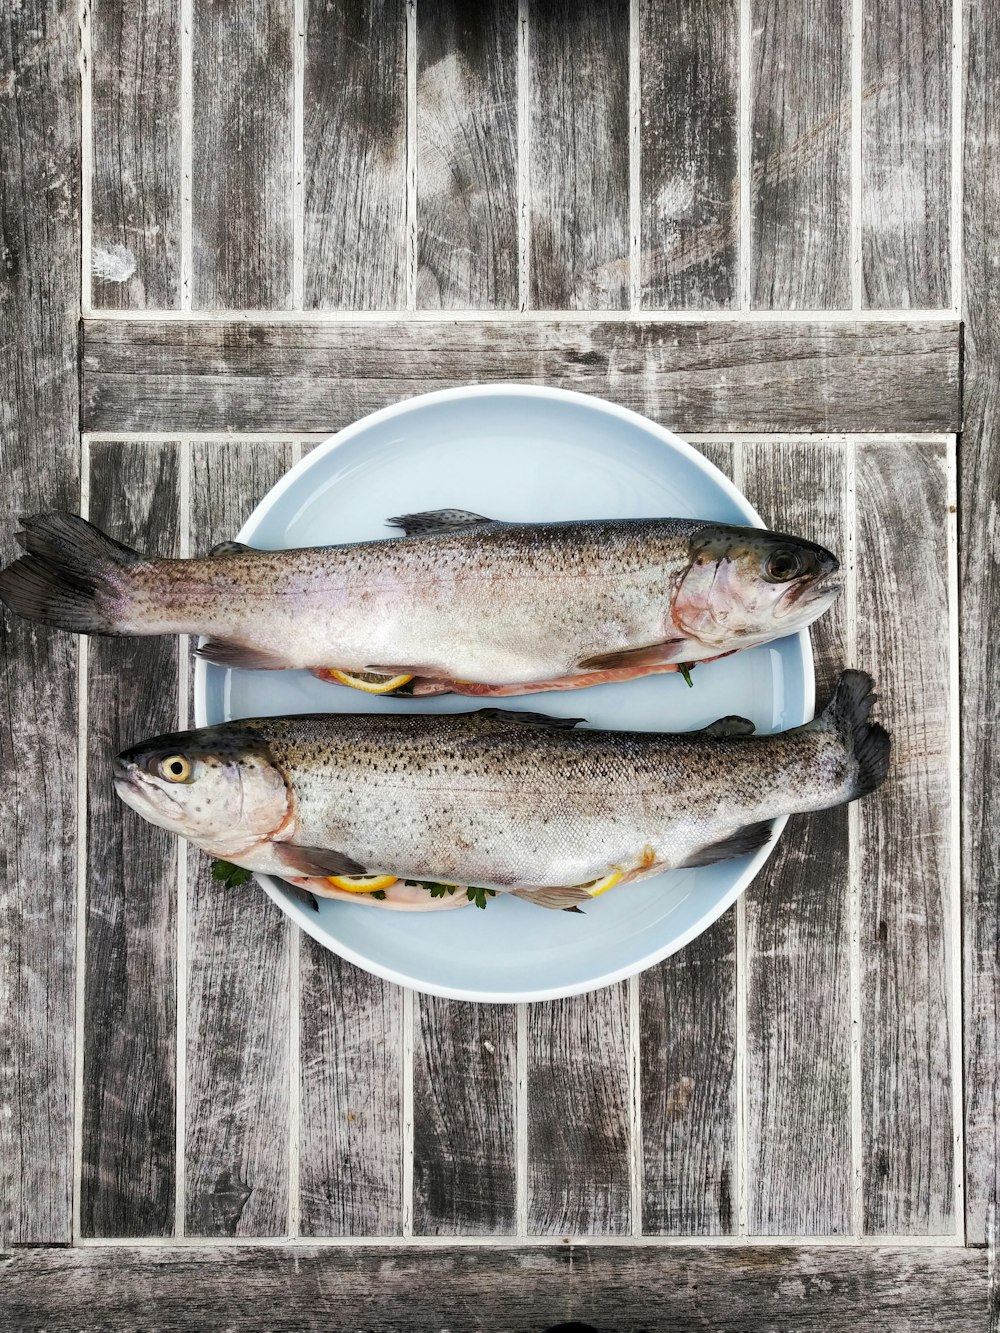 Πώς συντηρώ τα ψάρια στο ψυγείο: Κάντε το σωστά | Alphafreepress.gr